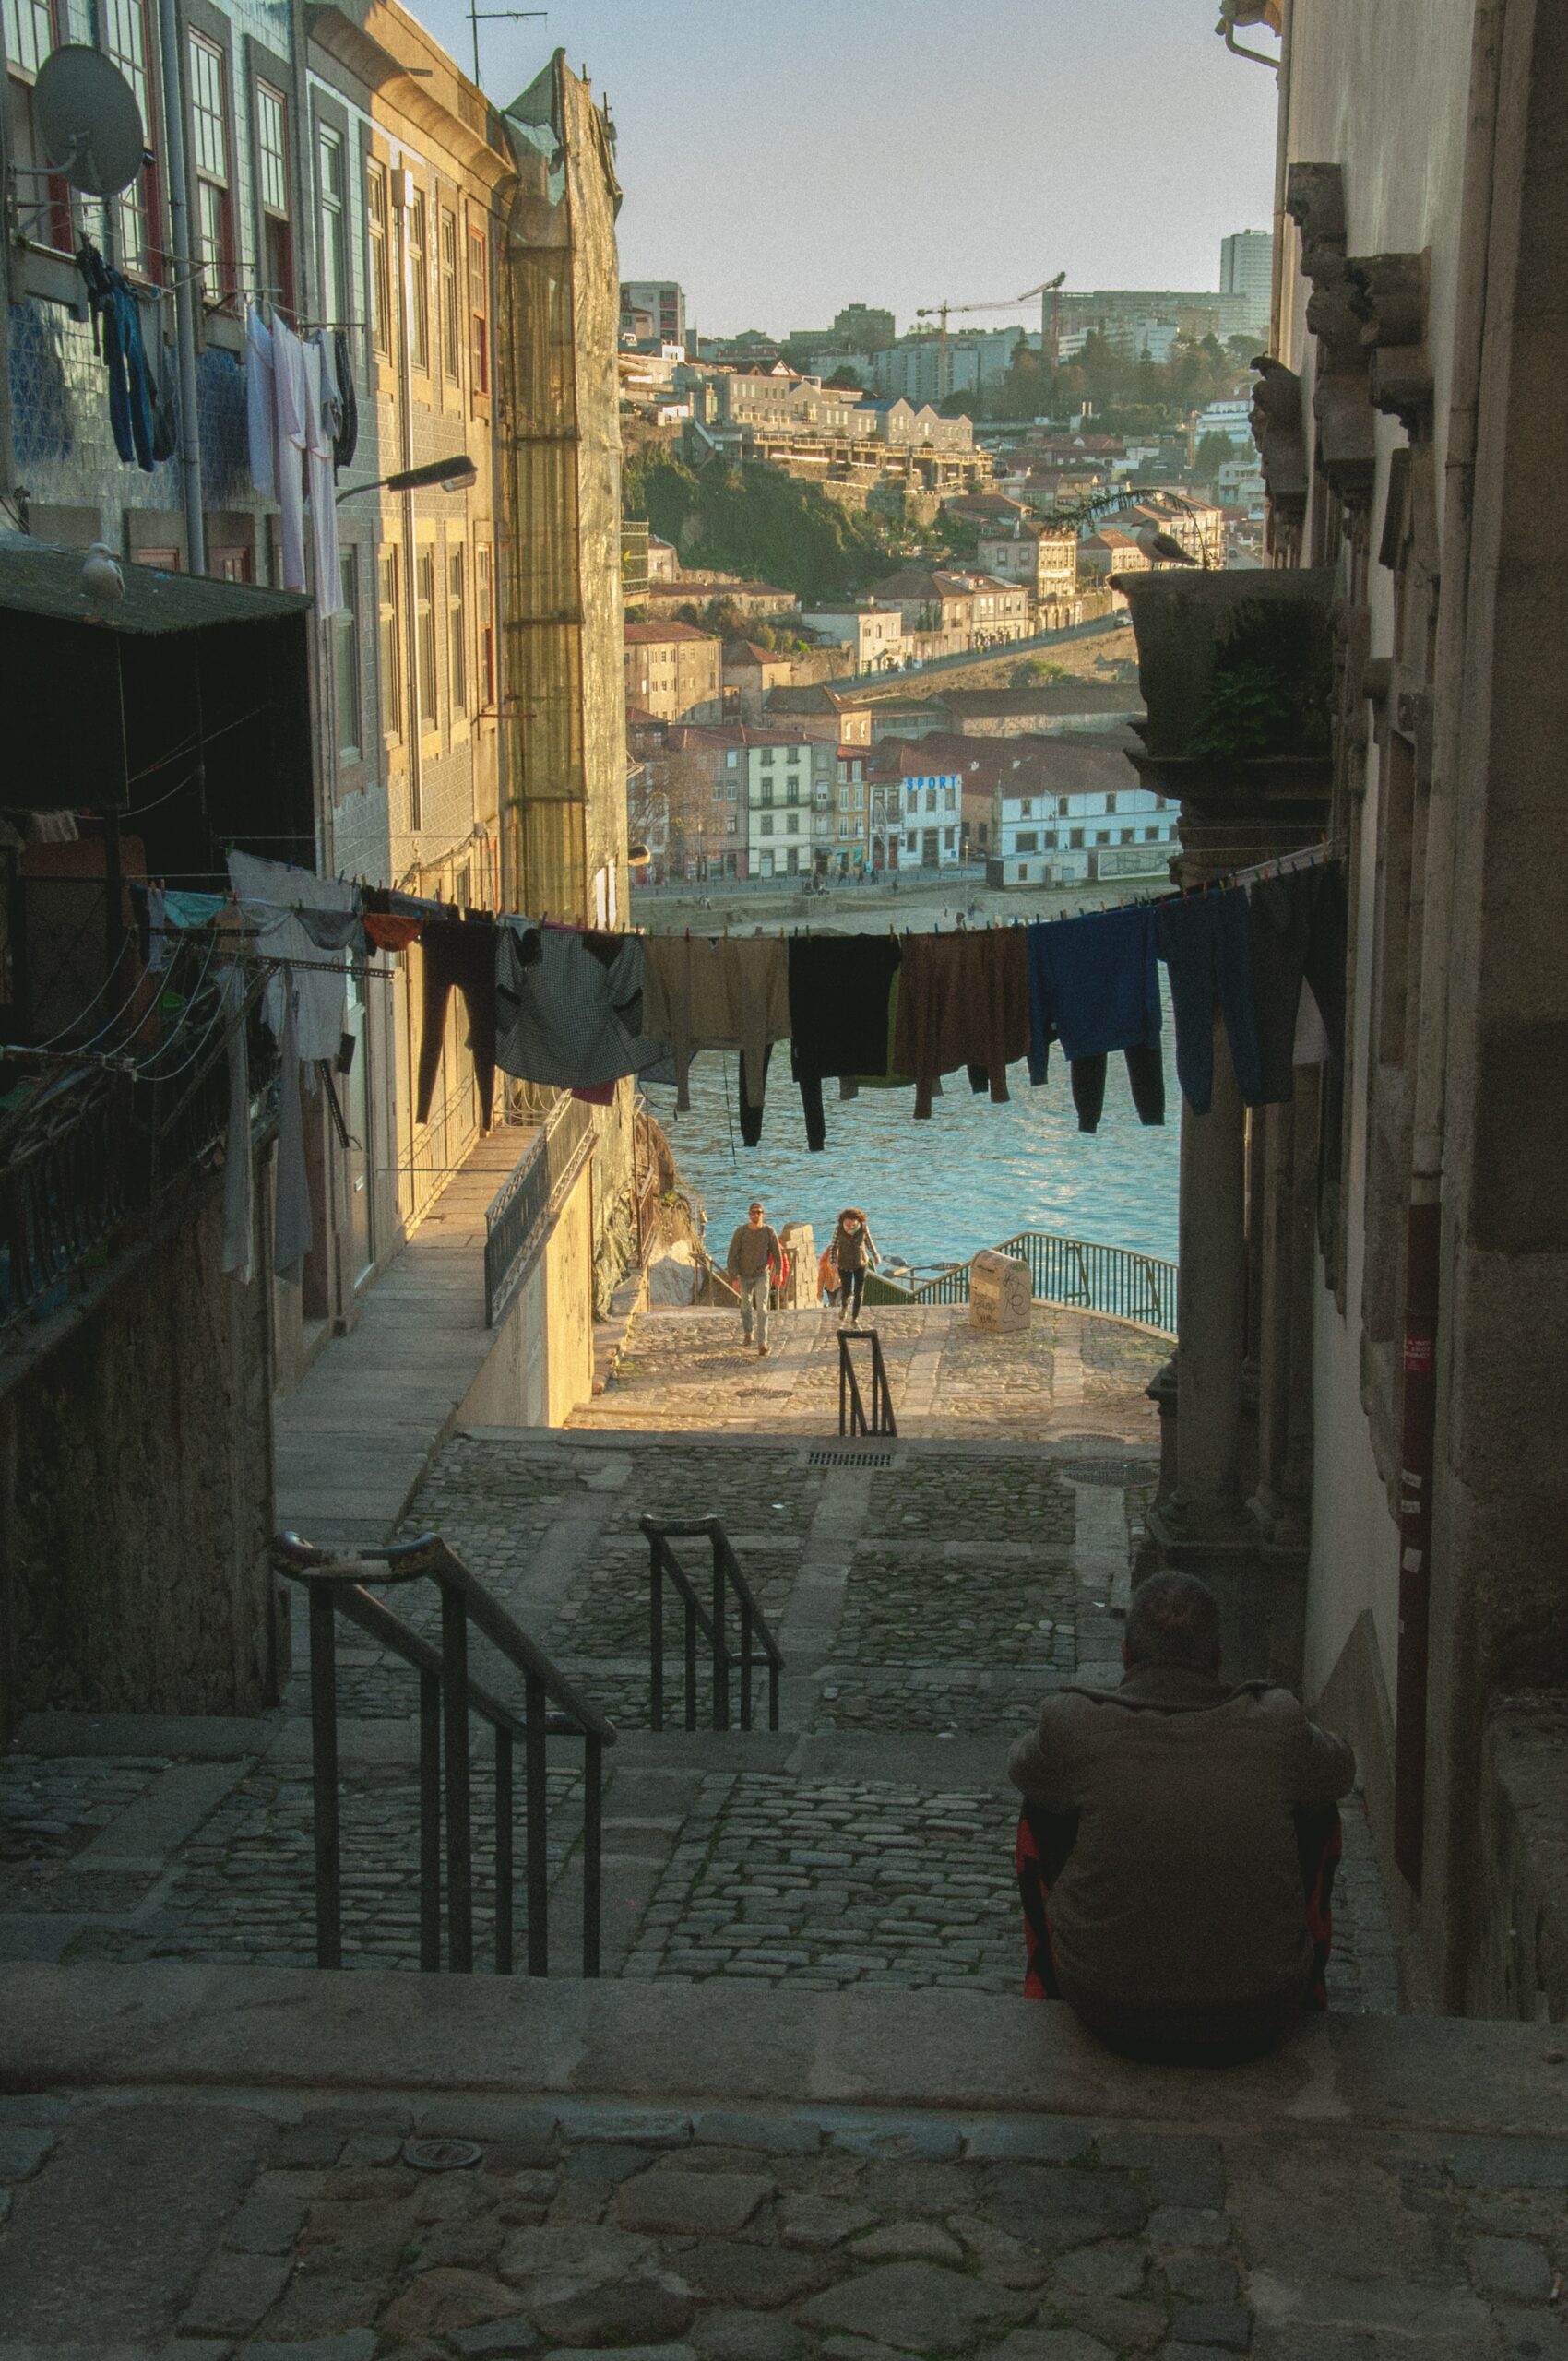 O que fazer no Porto? Aqui estão 20 atividades imperdíveis para tornar a sua viagem ao Porto inesquecível.